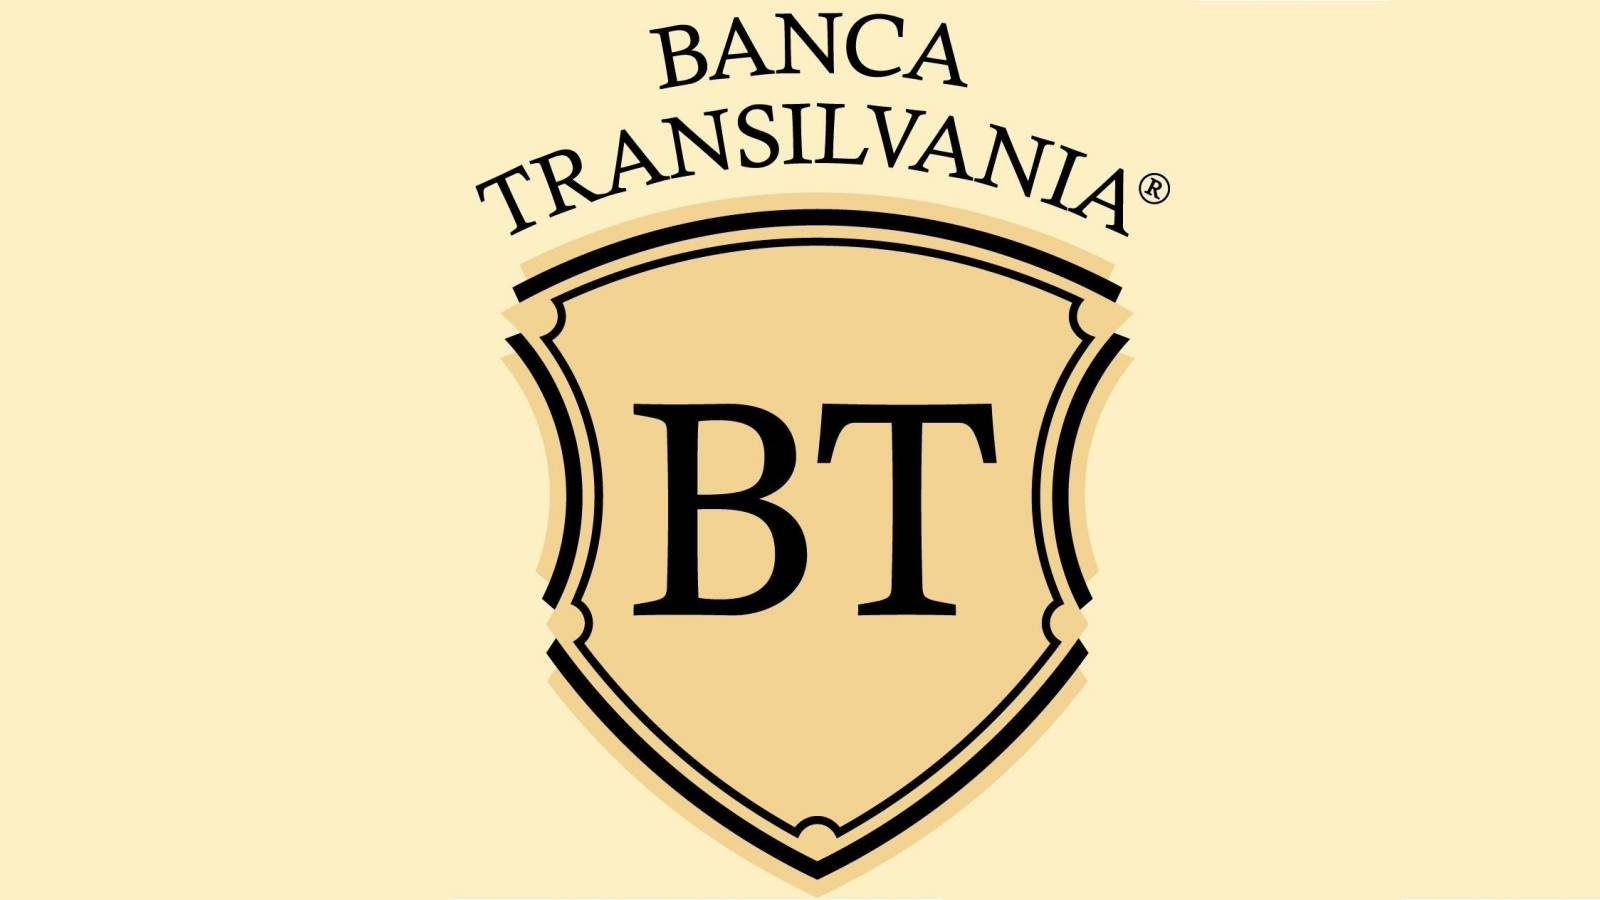 BANCA Transilvania officiellt meddelande i sista minuten, med ett viktigt meddelande om rumänska kunder